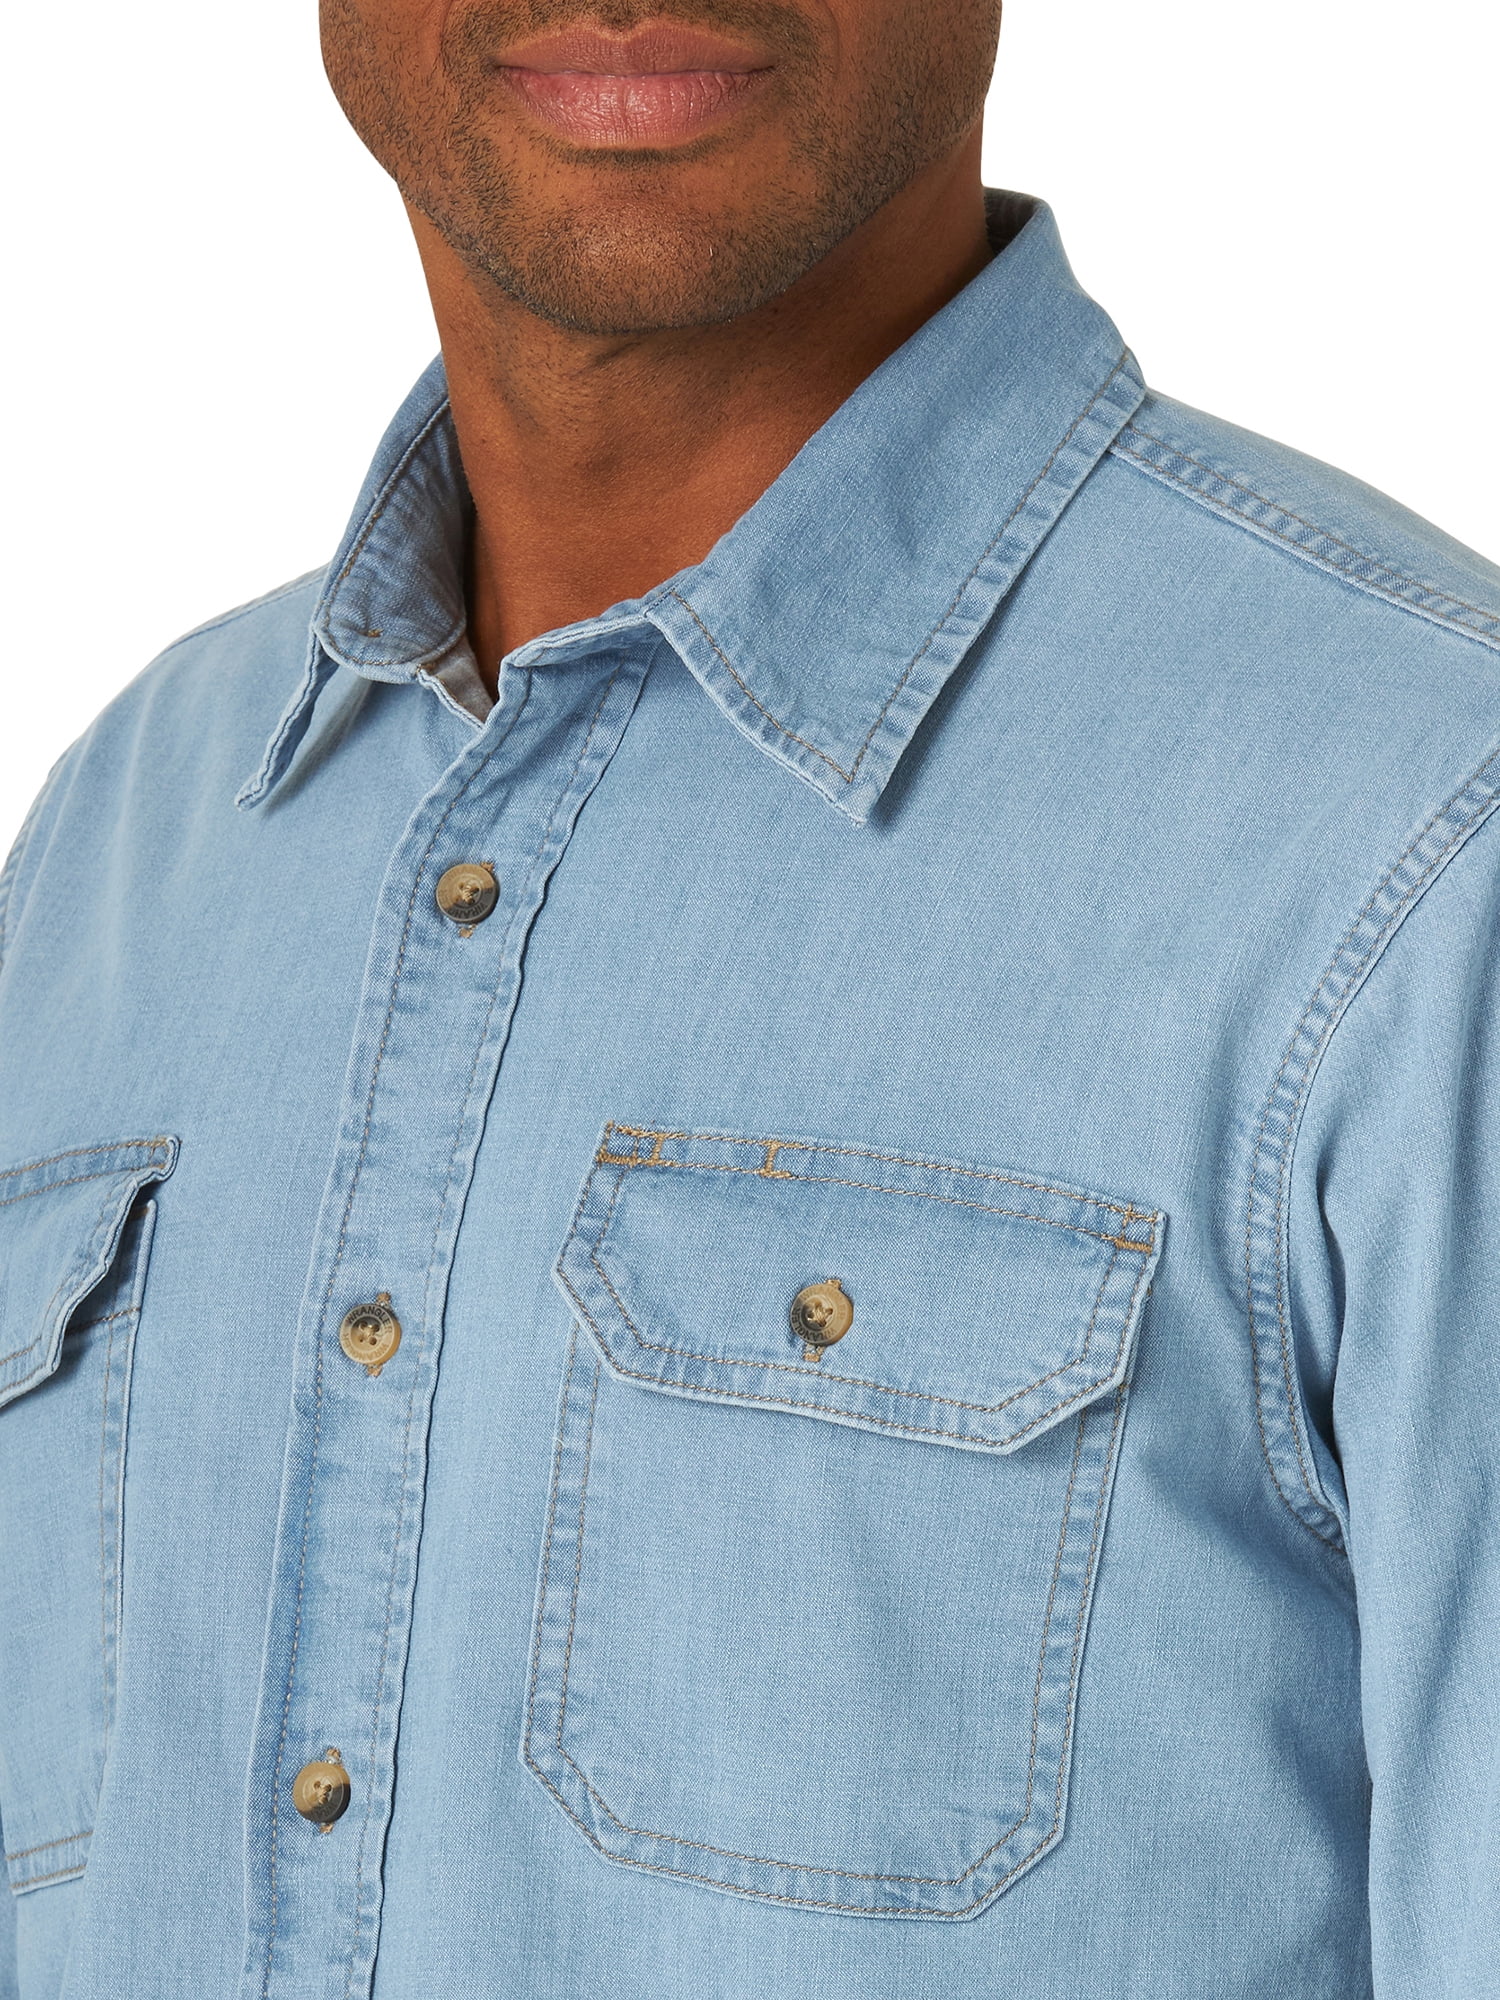 Wrangler Men's Shirt Comfort Flex Short Sleeve Denim Twill Button